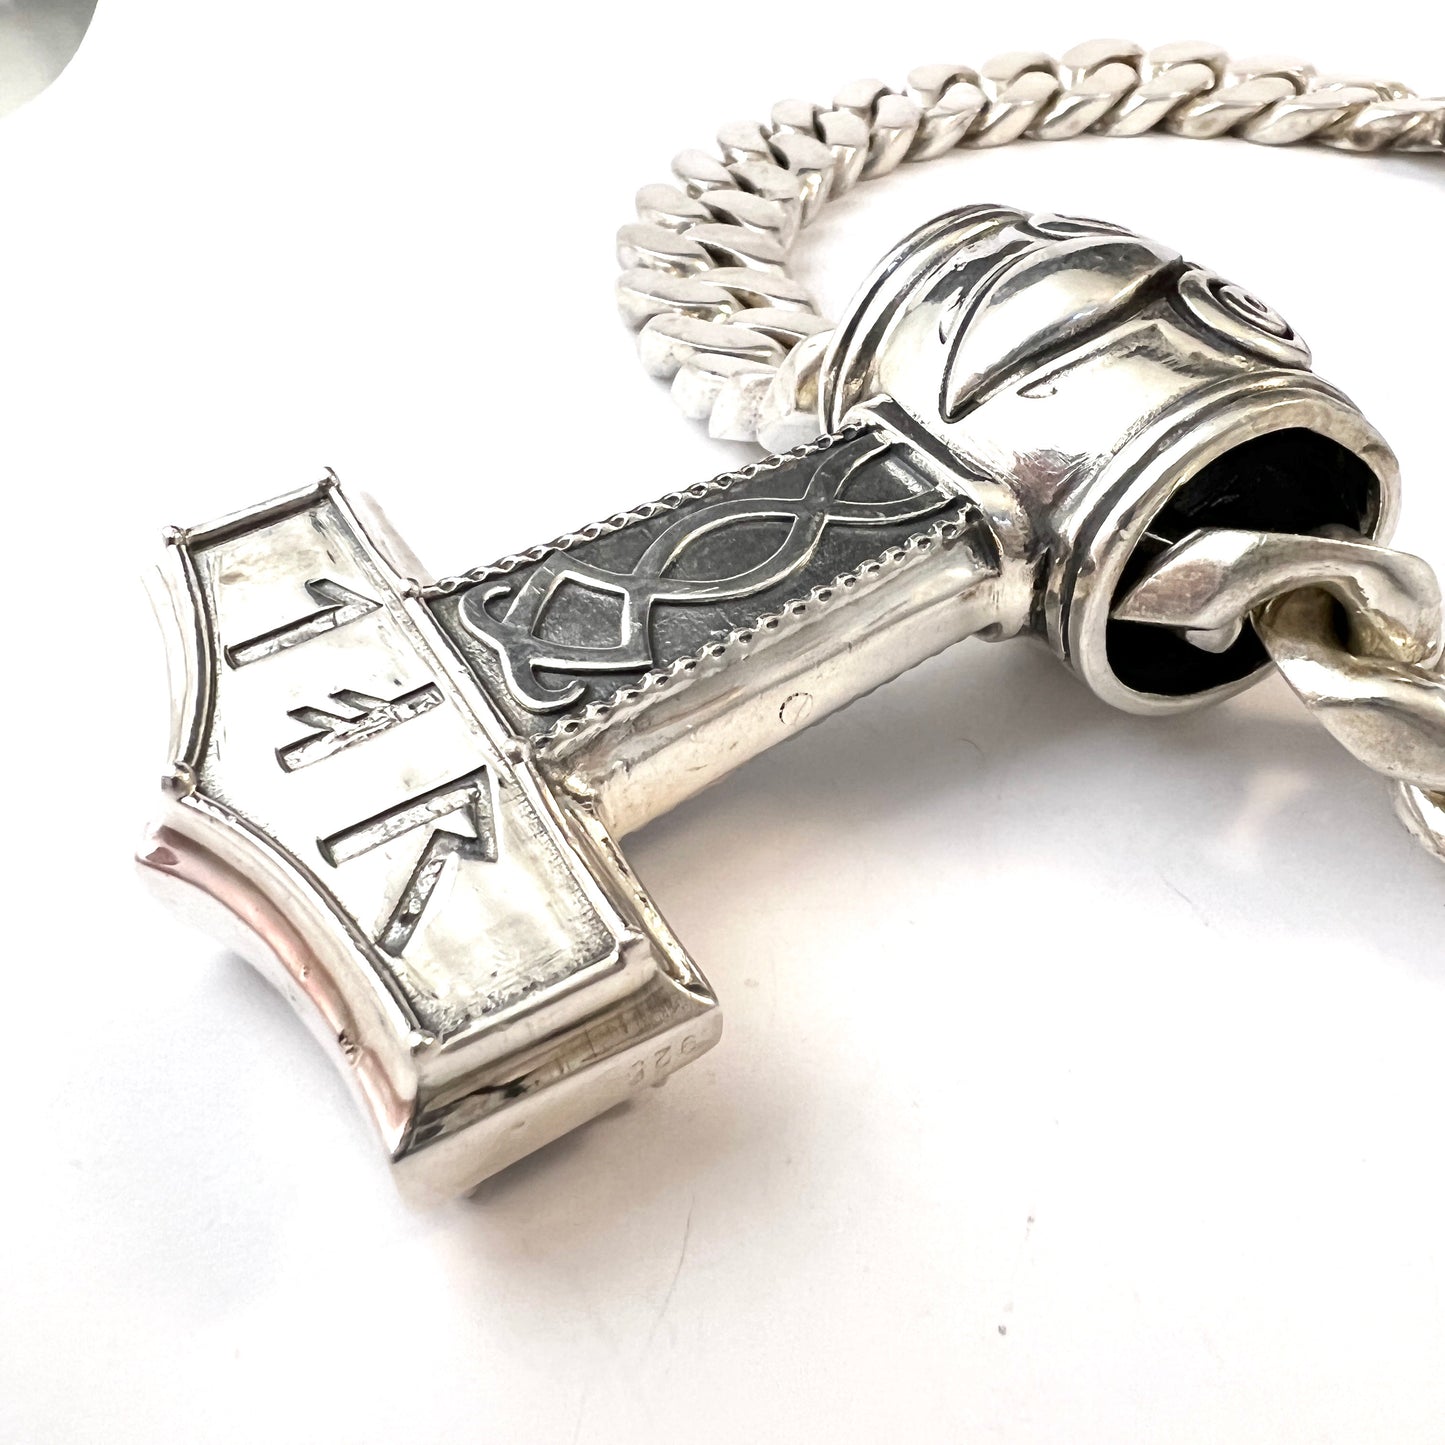 Massive 21oz / 0.6kg Sterling Silver Vintage Viking Copy Thor's Hammer Pendant Necklace.